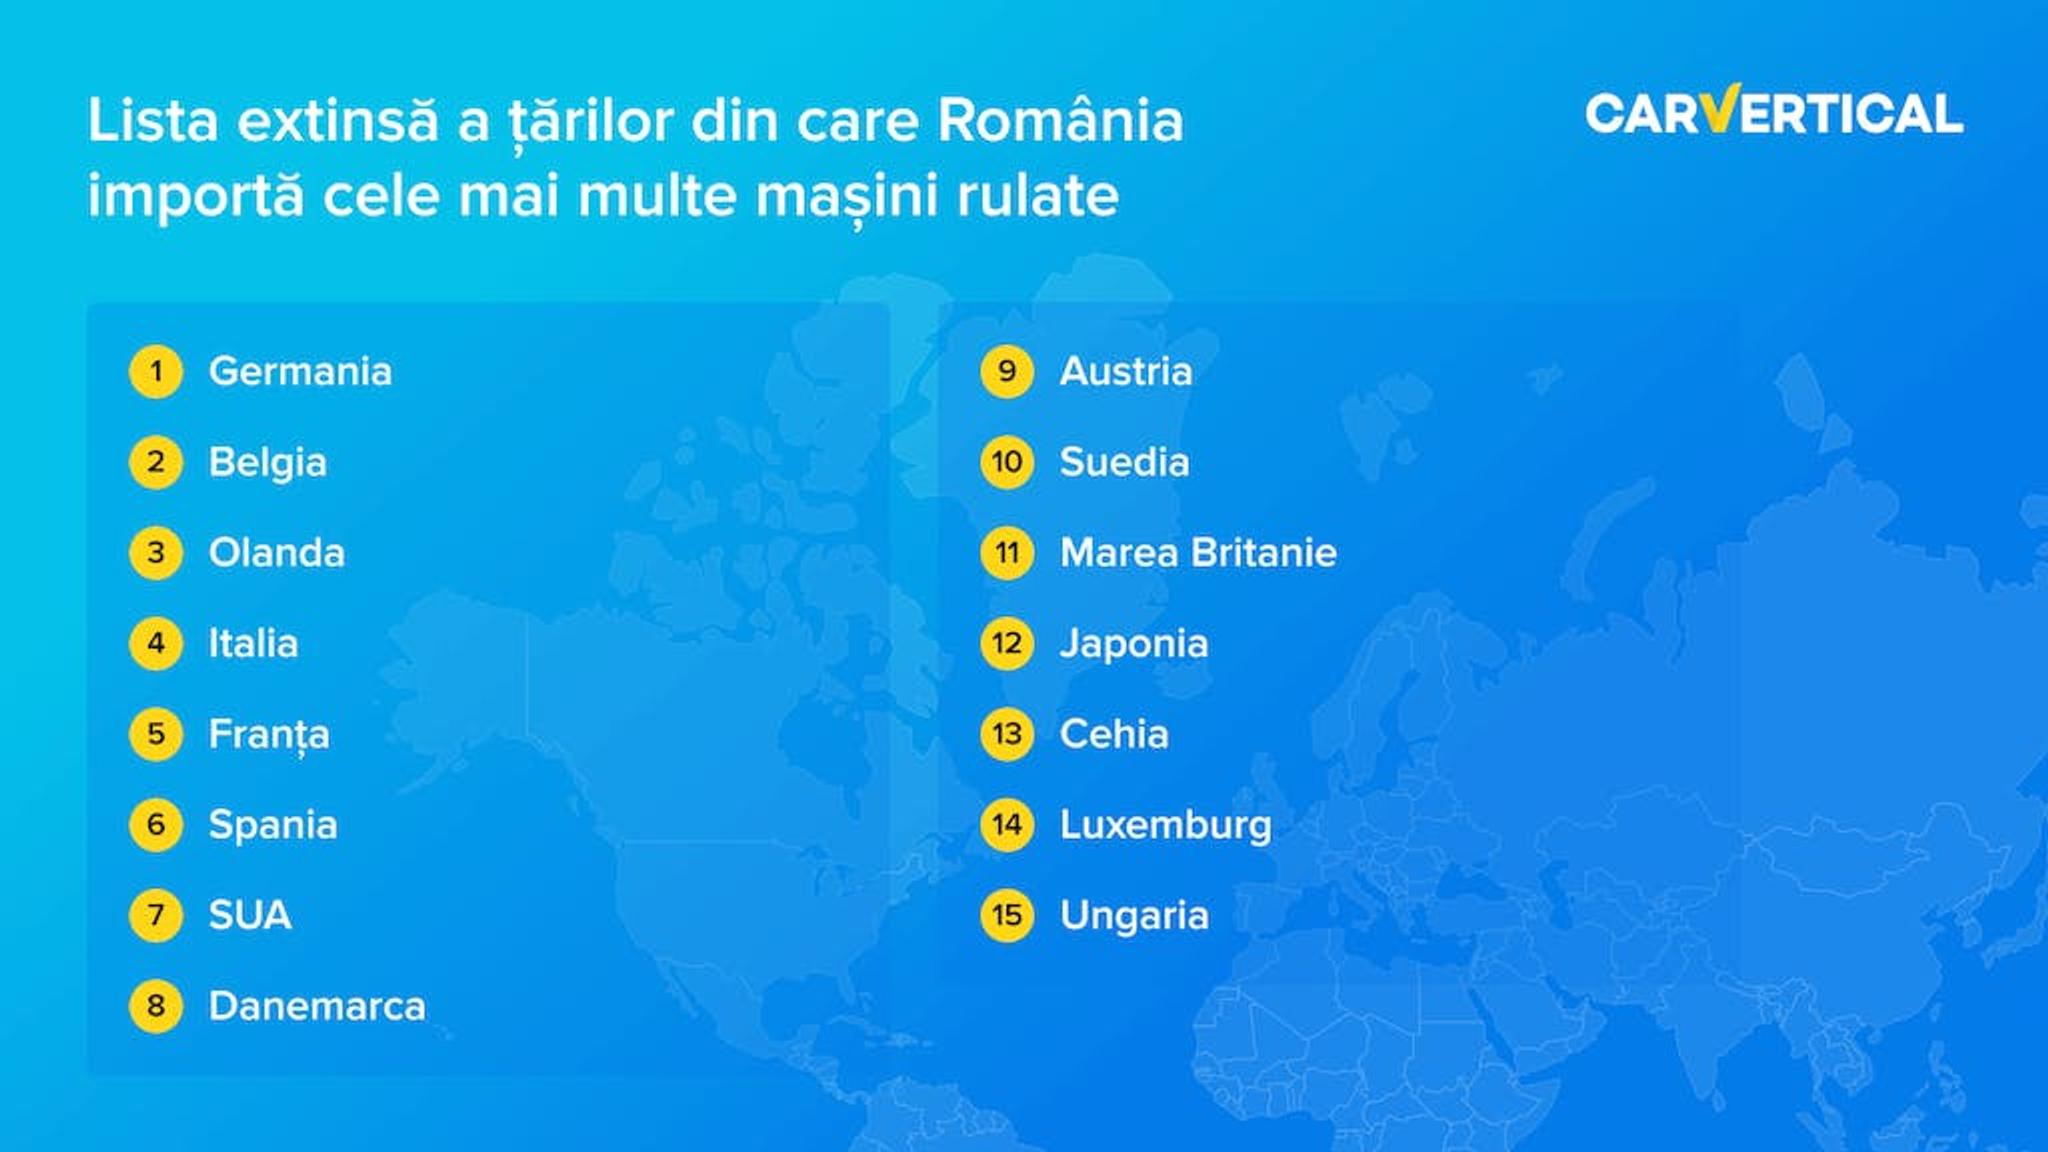 Lista extinsa a tarilor din care Romania importa cele main multe masini rulate